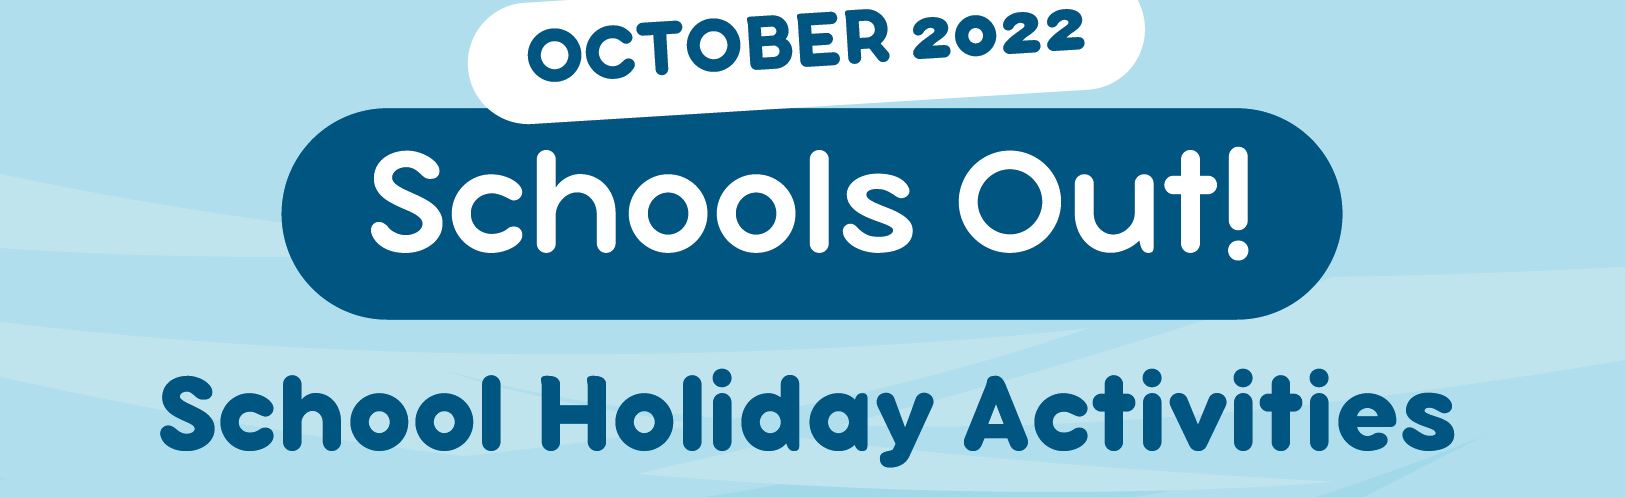 October 2022 School Holiday Activities